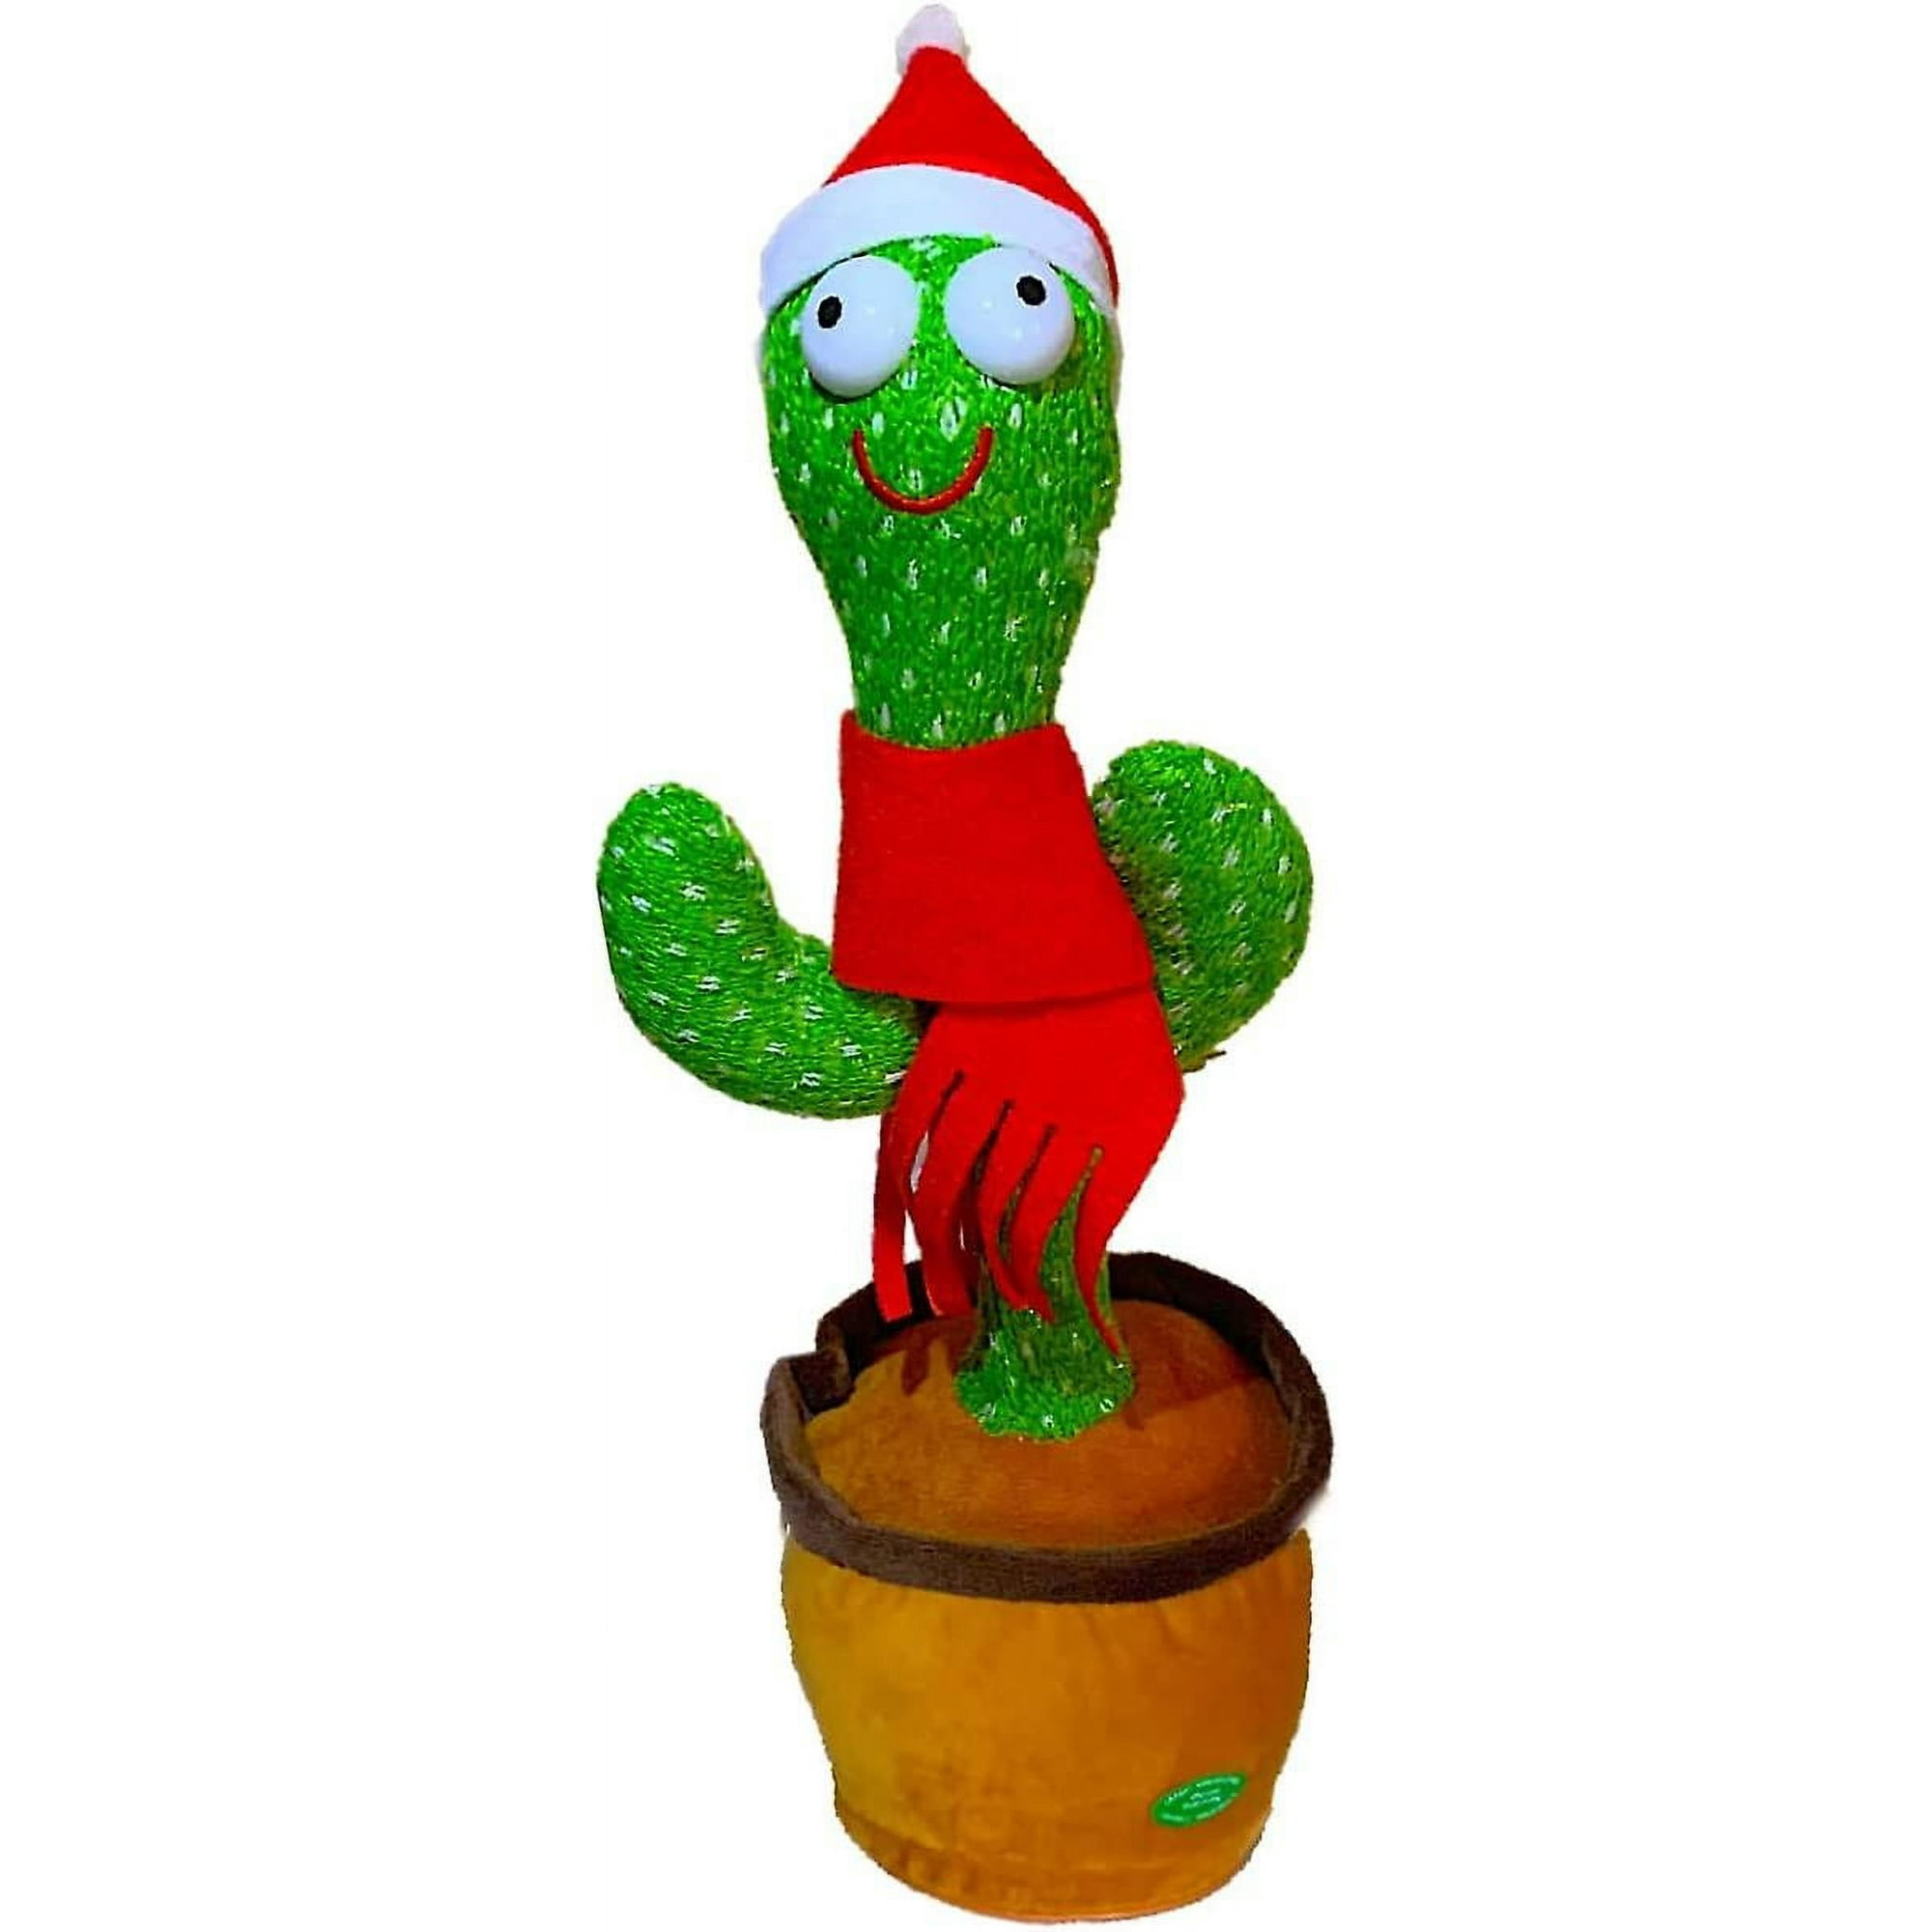 ER El juguete de peluche de cactus que habla, canta y baila imita